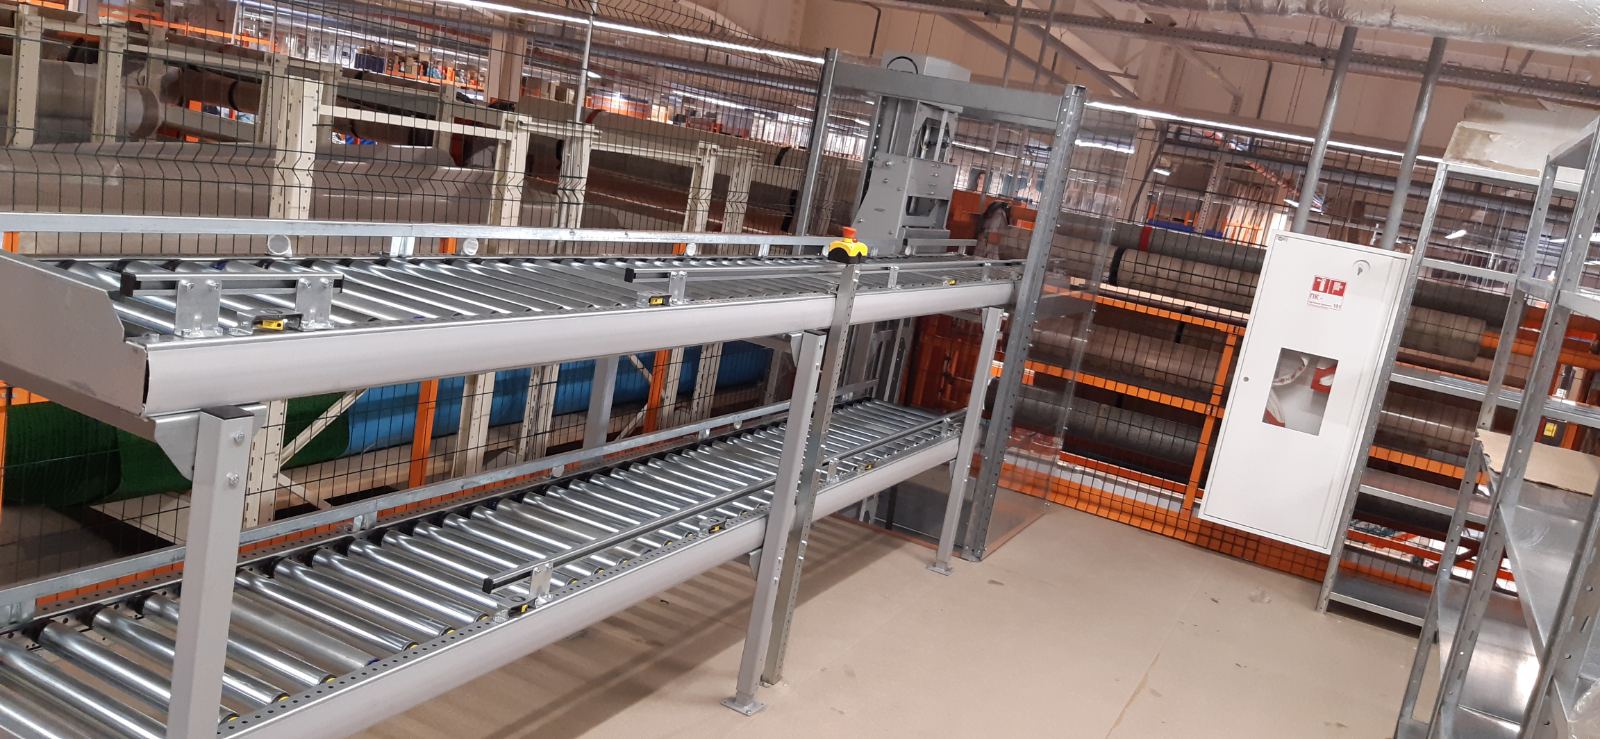 Box conveyor systems - 12 - kapelou.com